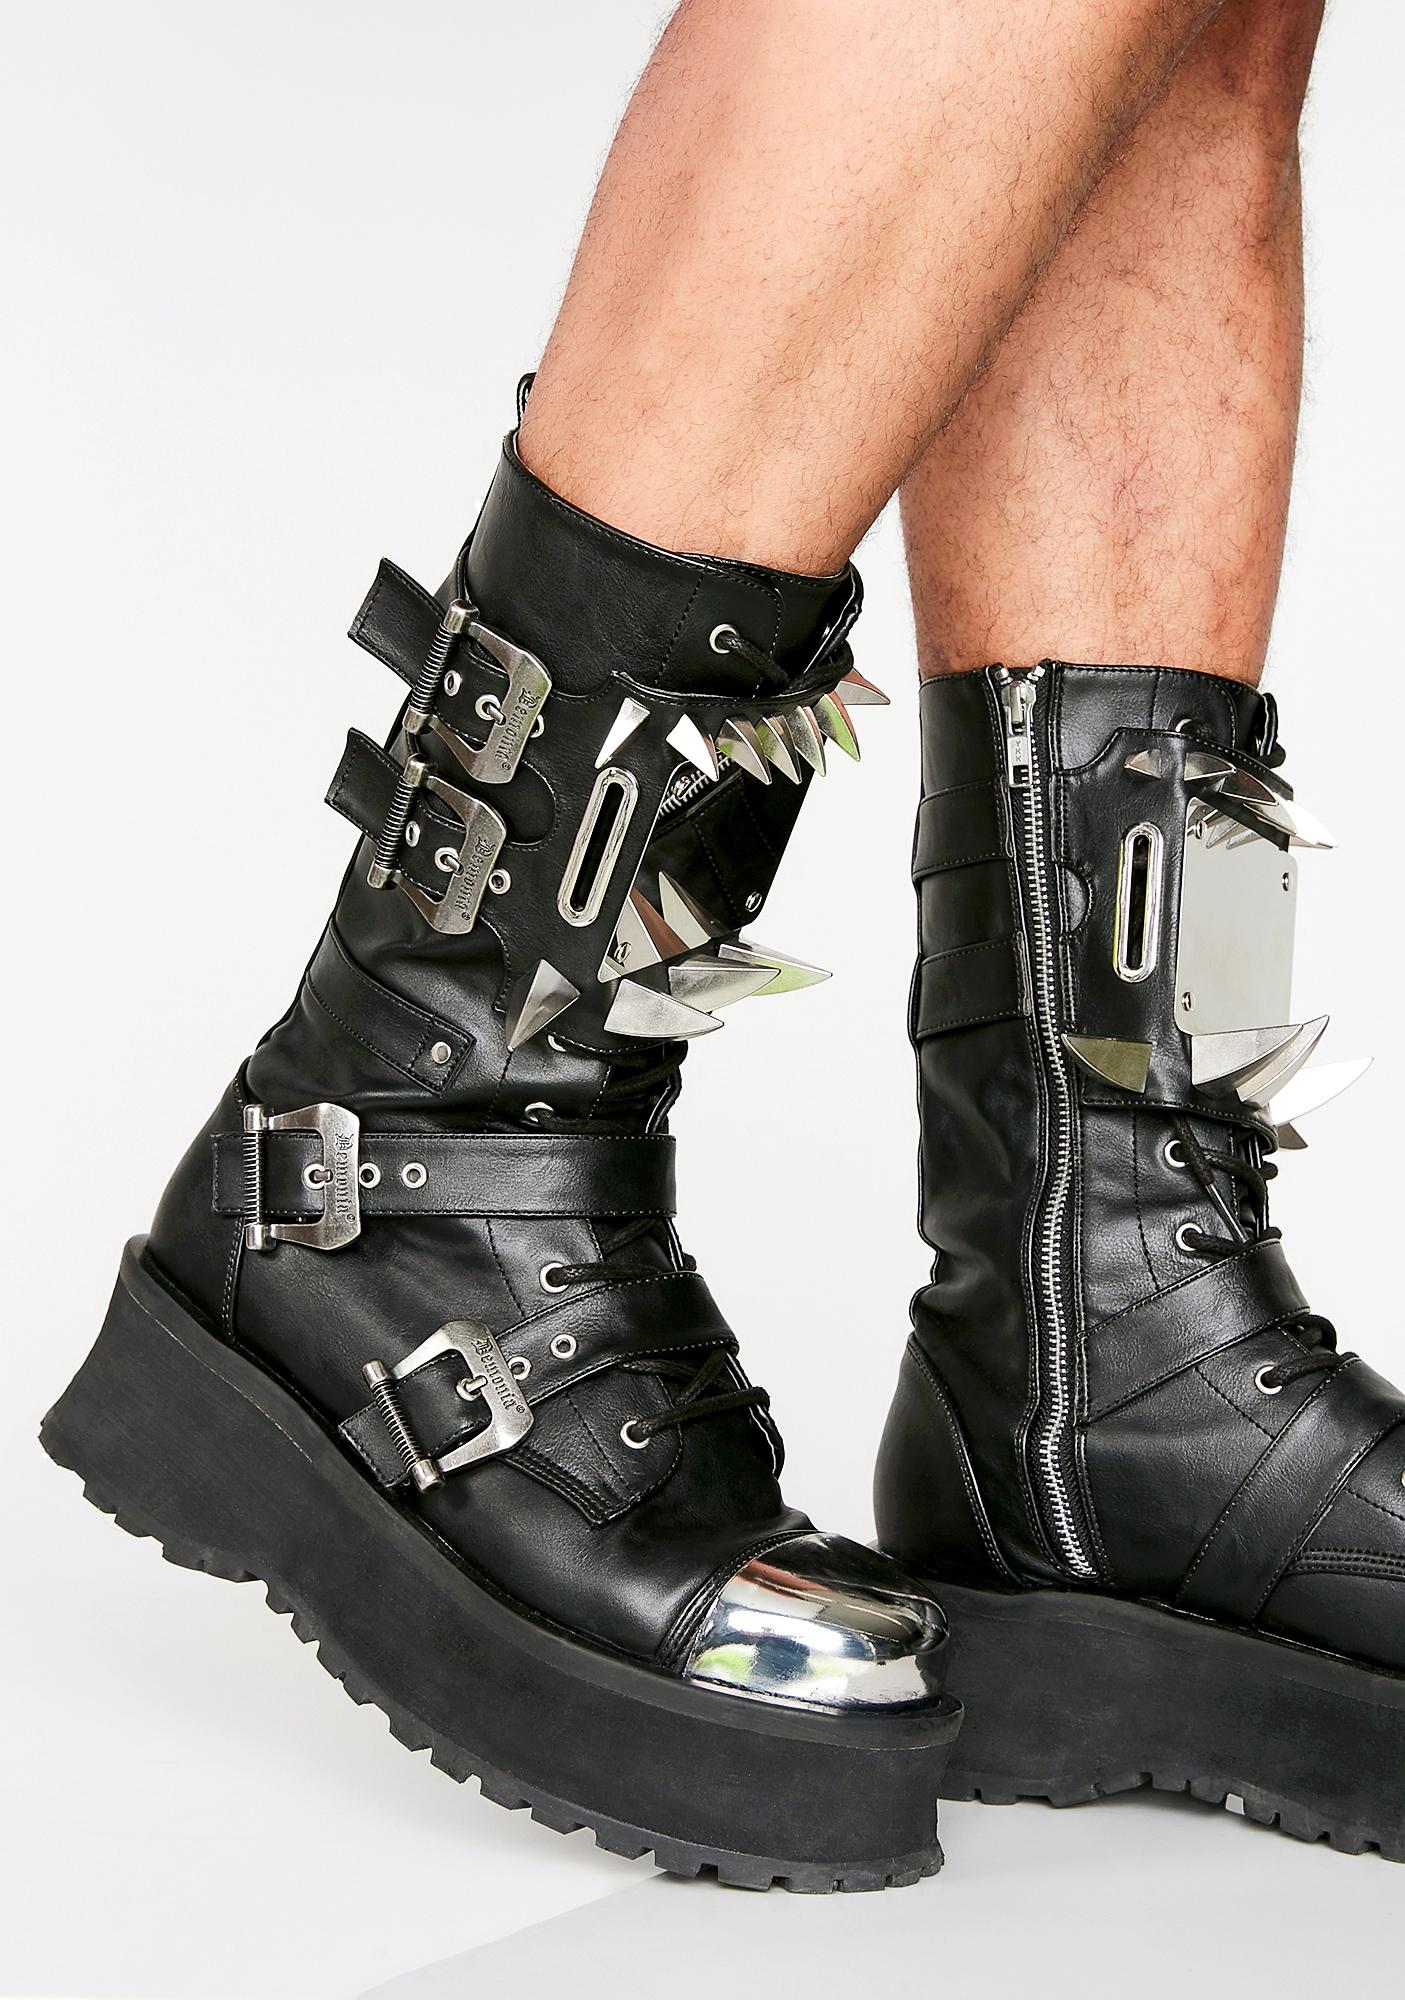 spiked biker boots